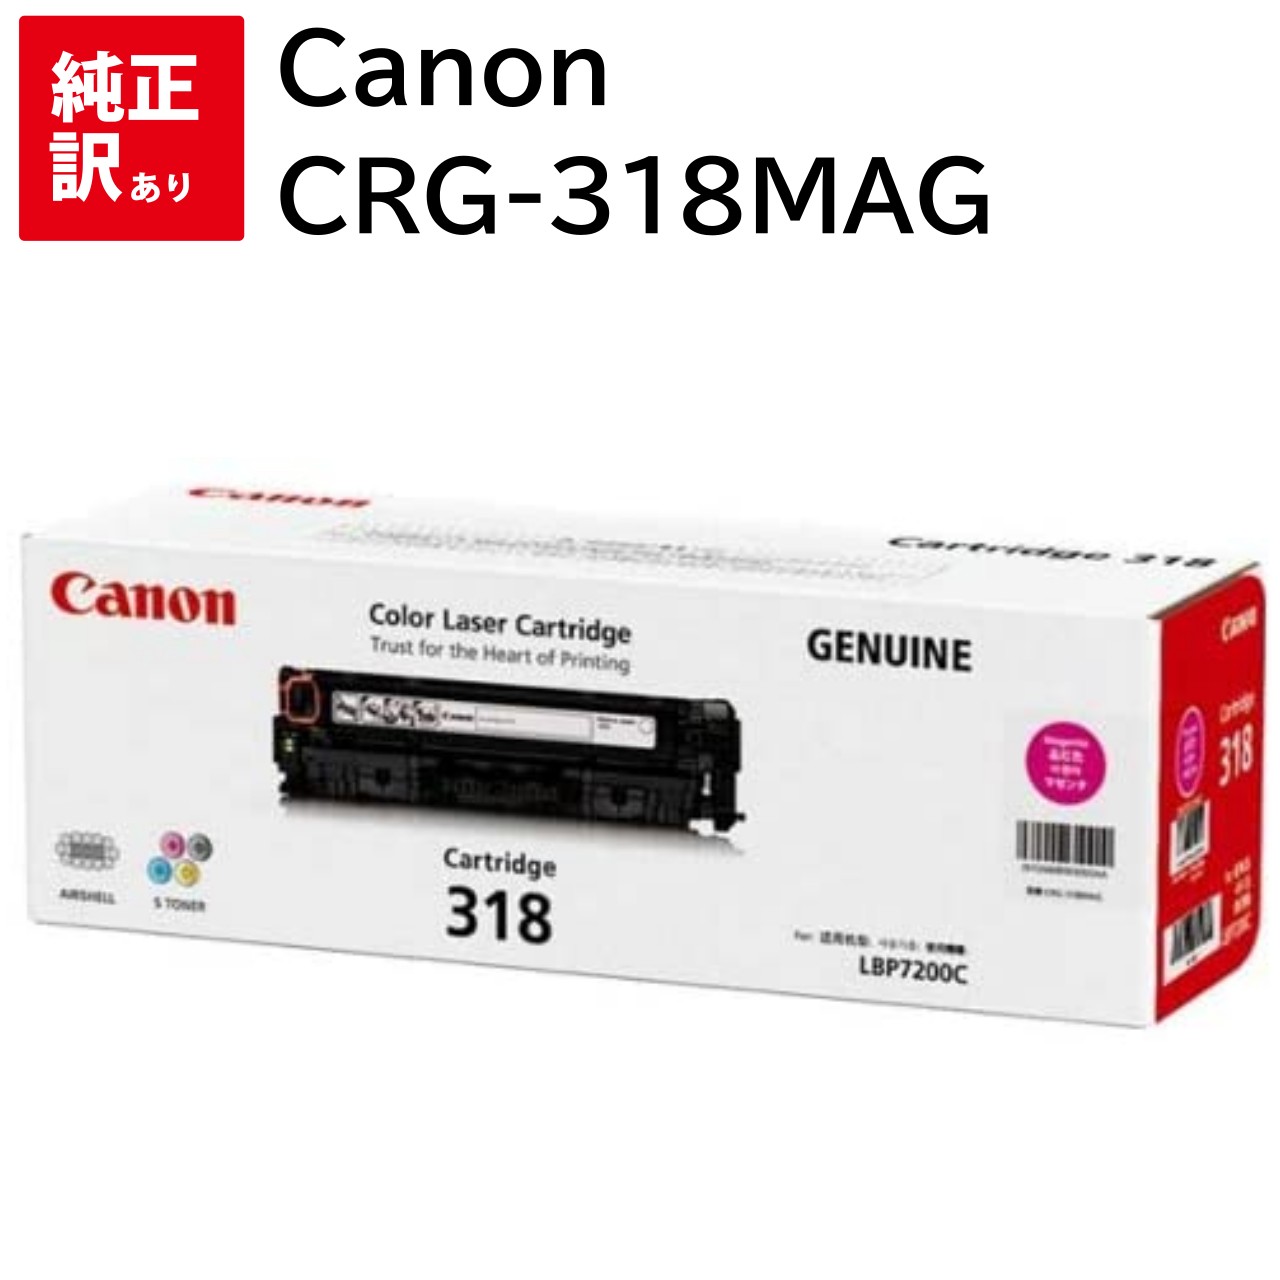 特別価格 訳あり 新品 Canon CRG-318MAG マゼンタ キャノン トナー